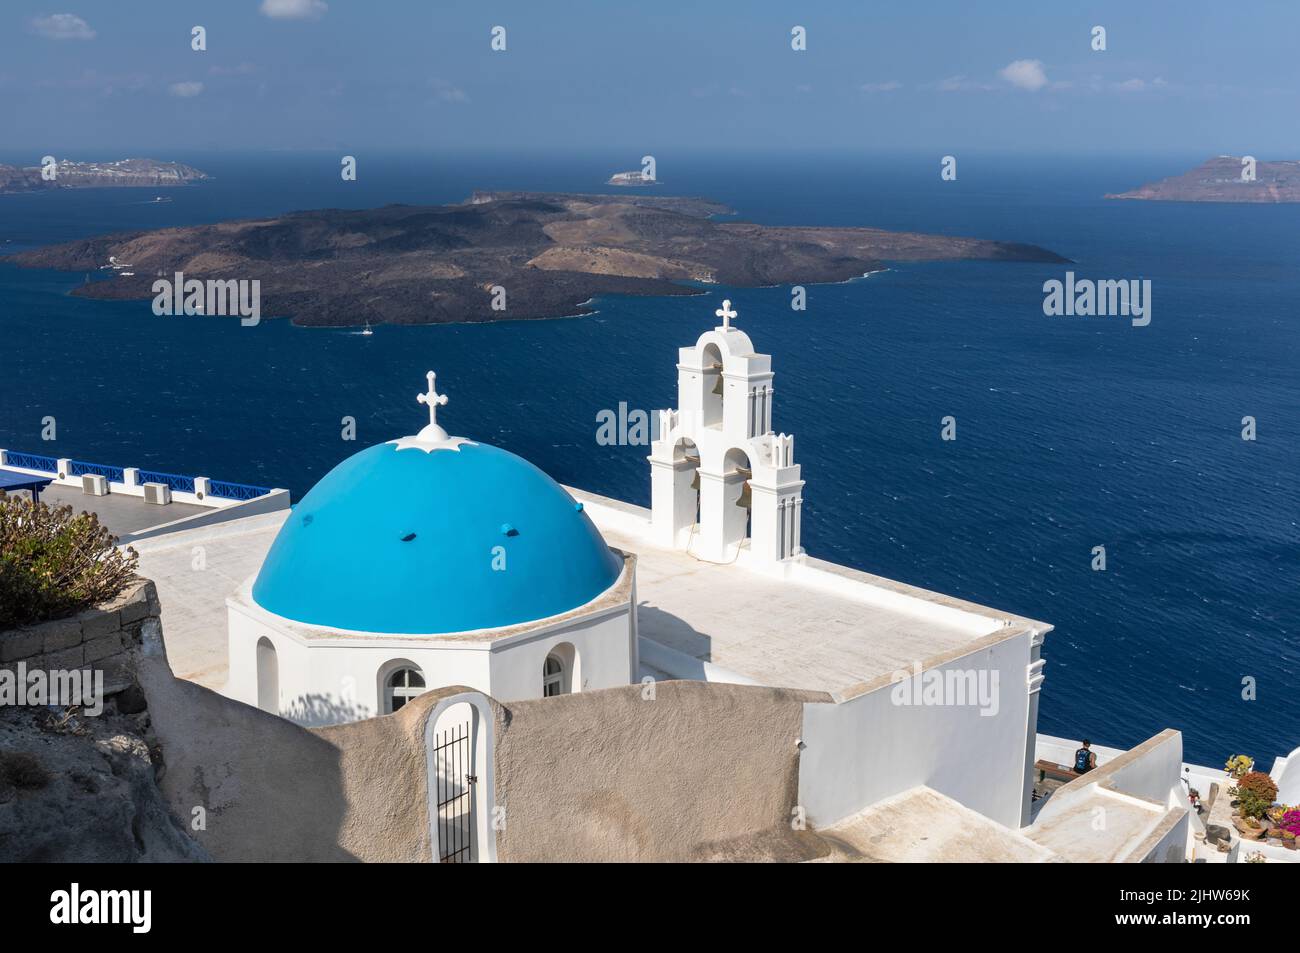 La Chiesa cattolica della Dormizione - tre campane di Fira con la sua cupola blu che si affaccia sul Mar Egeo e il vulcano, Fira, Santorini isola, Grecia Foto Stock